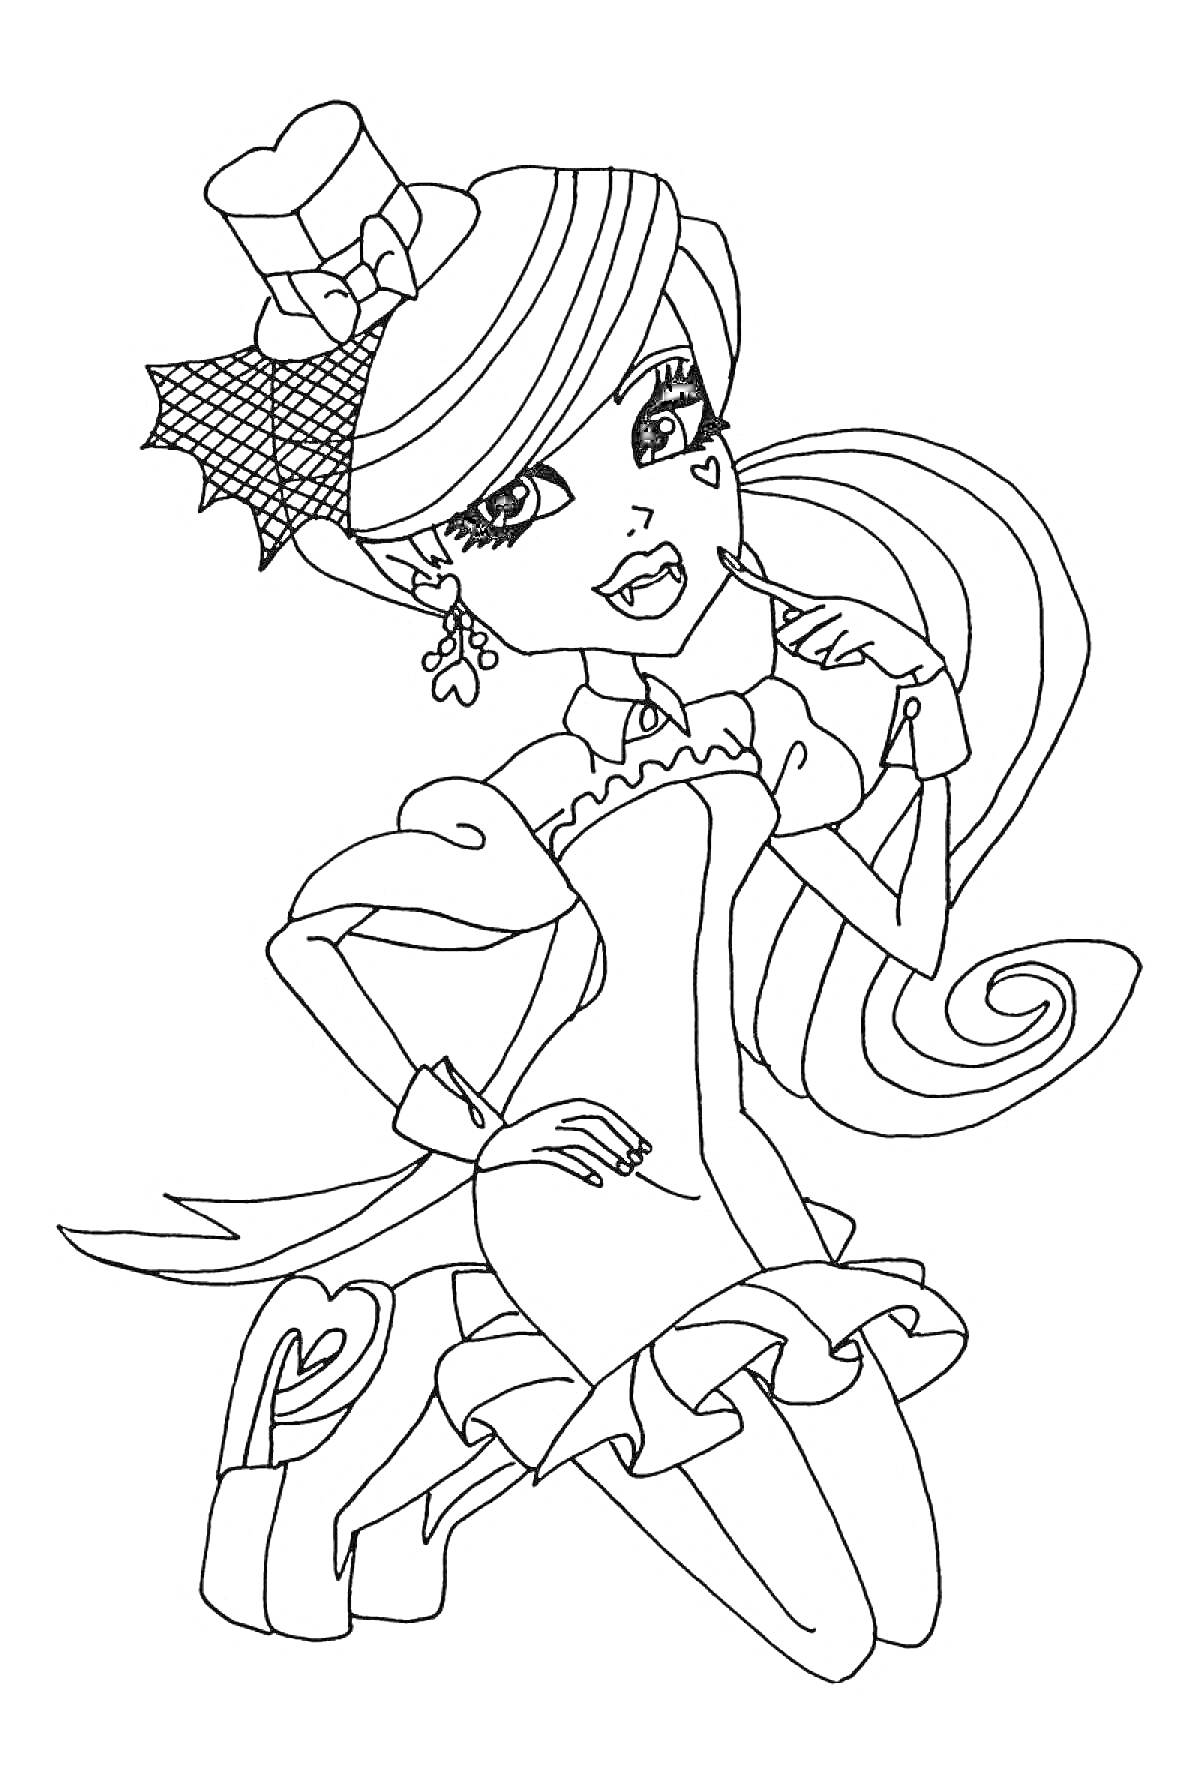 Раскраска Девочка в шляпке с сердечком на щеке, в платье с рюшами и паучьей сеткой в волосах, с украшением в виде звезды на ушах